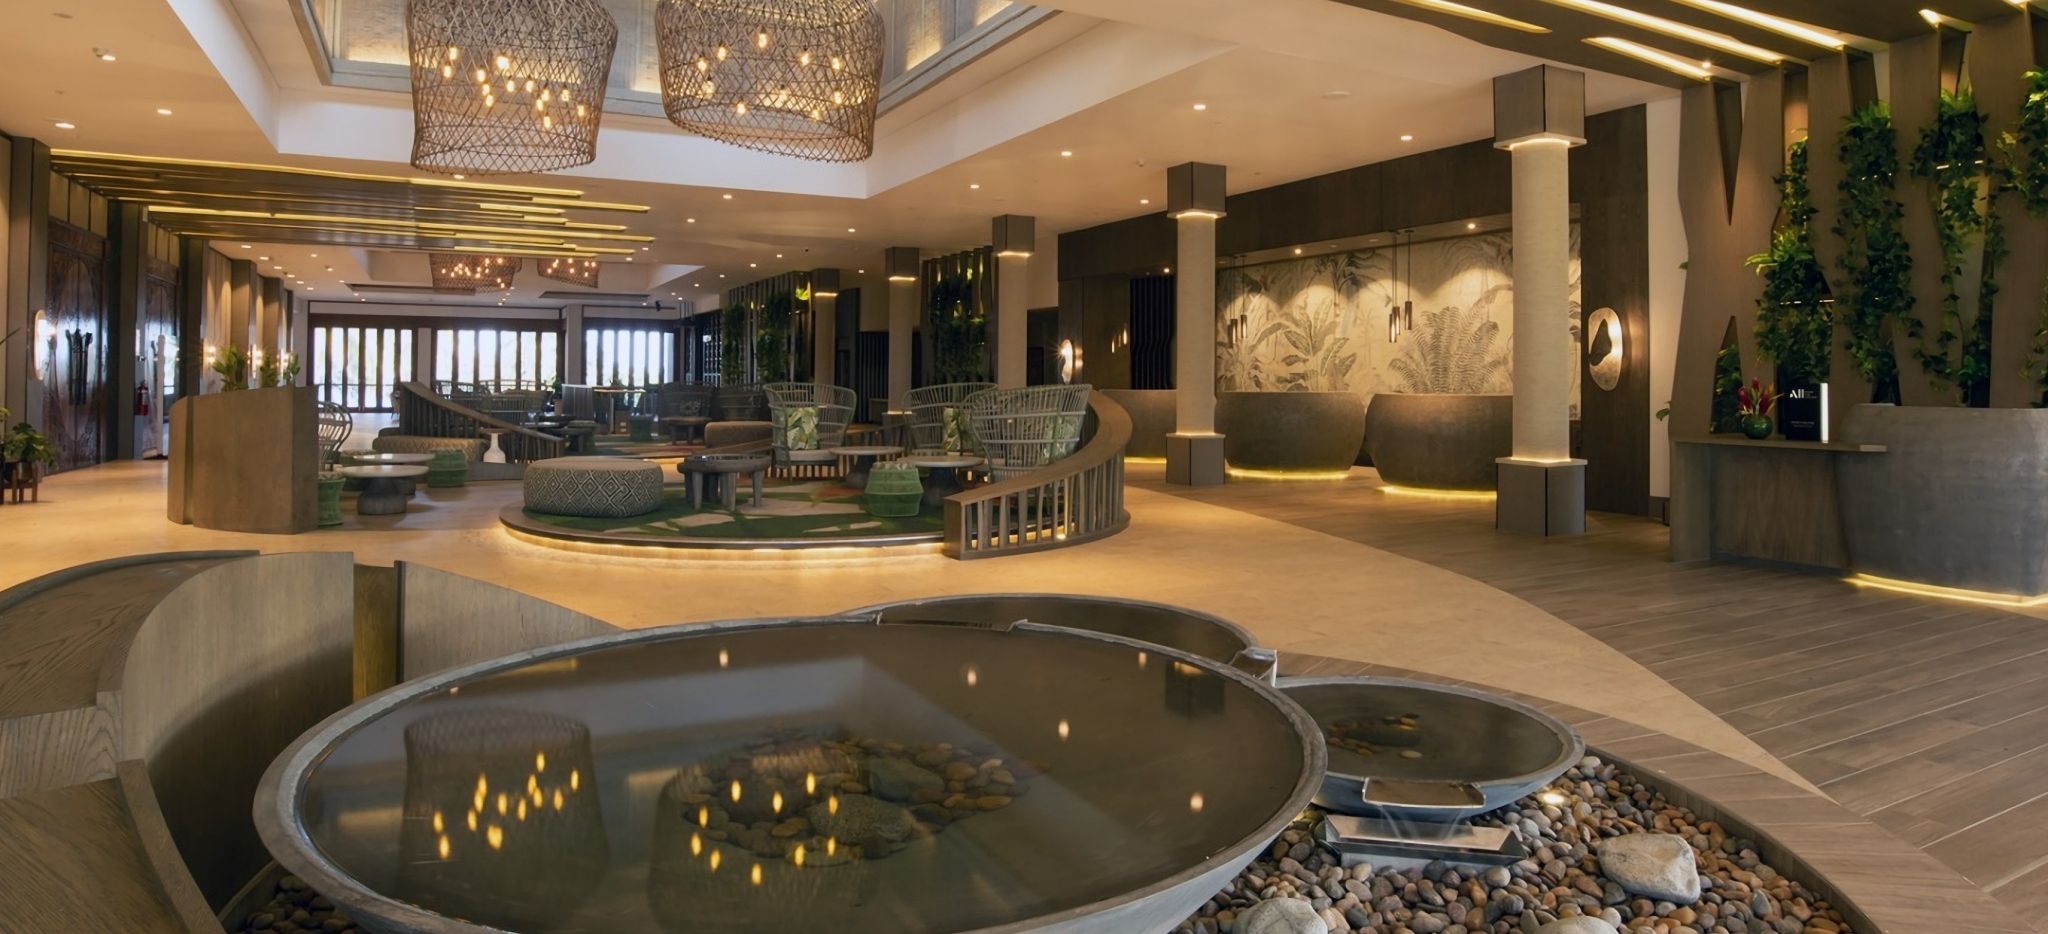 Lobby im Hotel Sofitel Fiji Resort mit verschiedenen Sitzmöglichkeiten